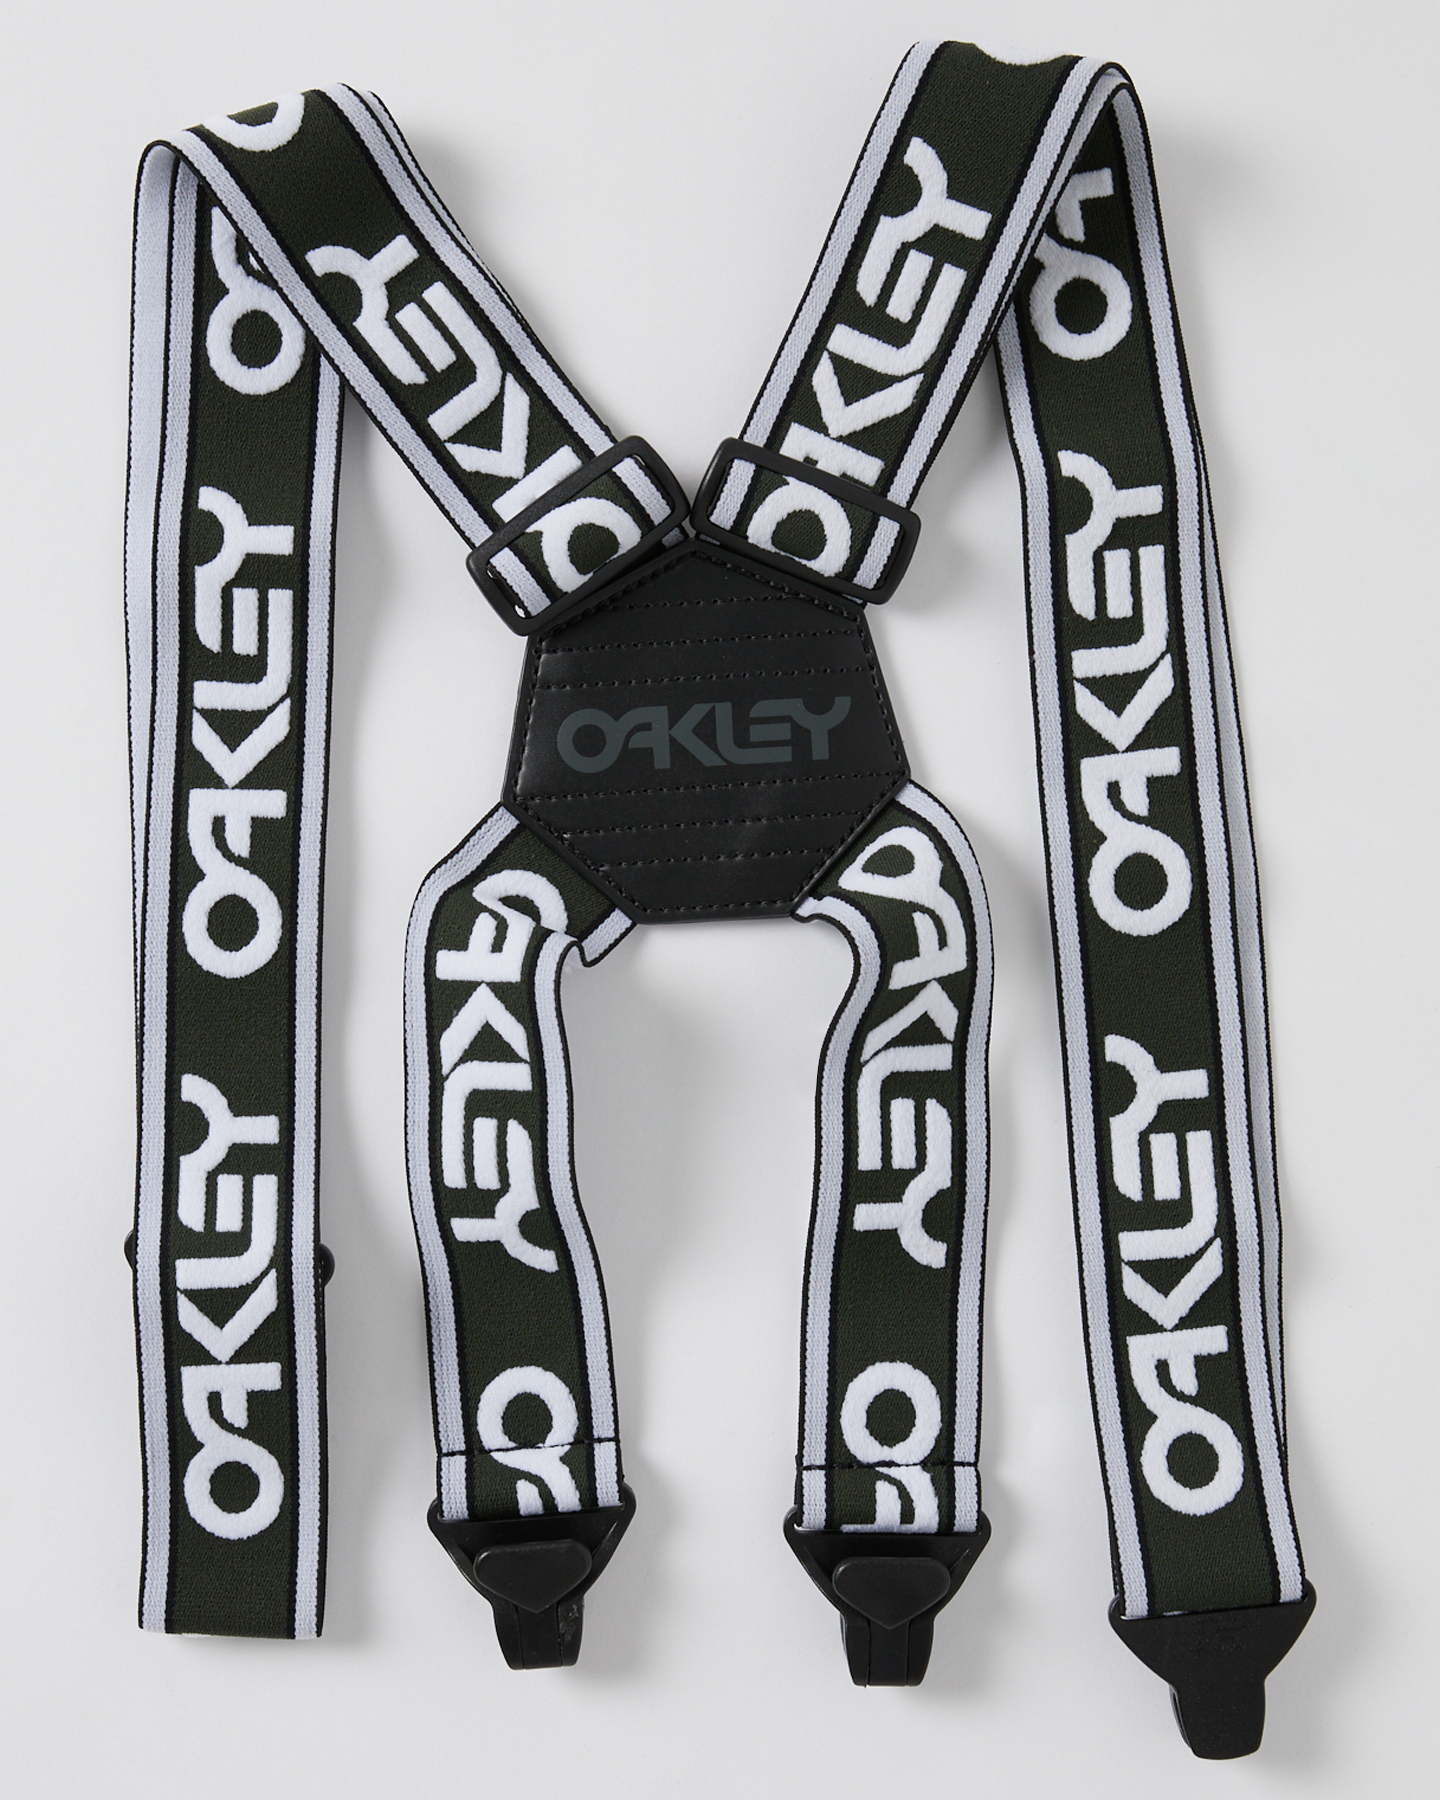 Oakley Factory Suspenders - New Dark Brush White | SurfStitch